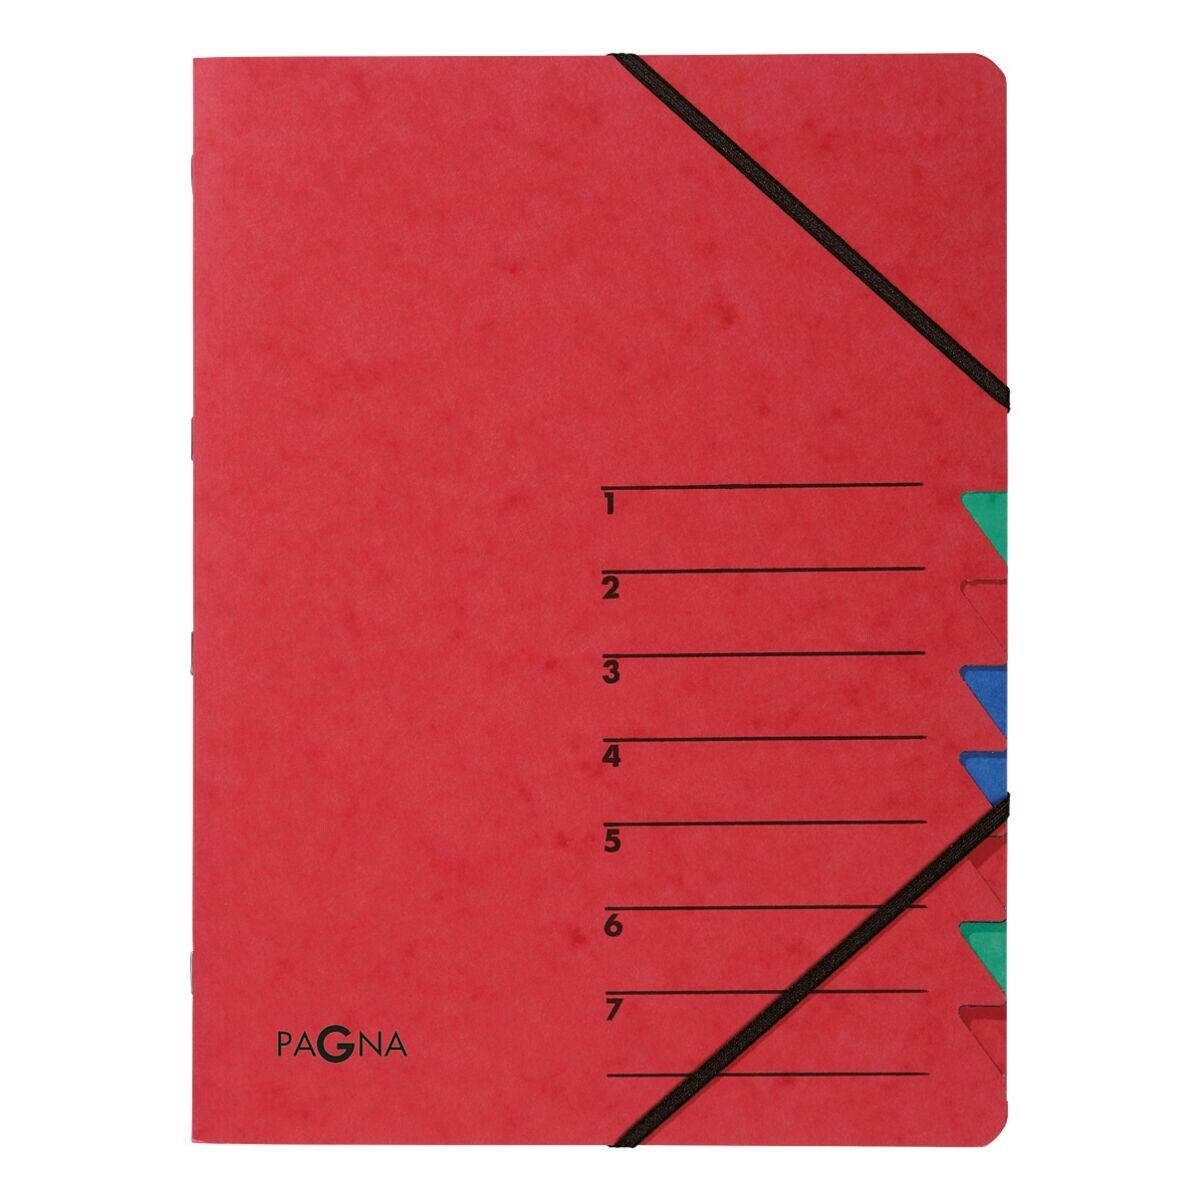 PAGNA Organisationsmappe Standard, Ordnungsmappe mit 7 Fächern, A4 rot